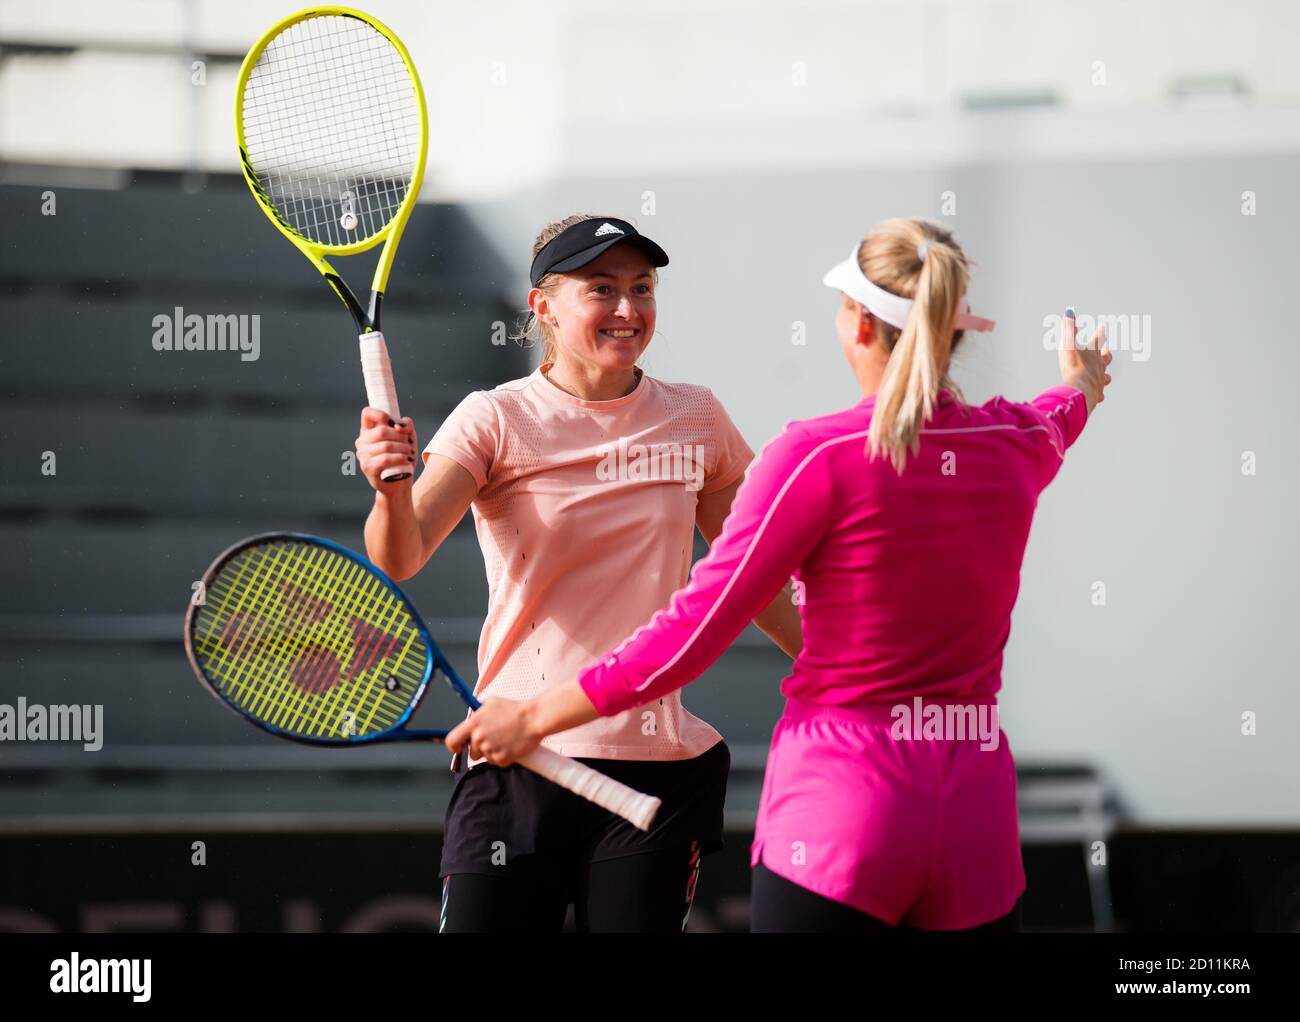 Marta Kostyuk dell'Ucraina e Aliaksandra Sasnovich della Bielorussia giocano due volte al Roland Garros 2020, torneo di tennis Grand Slam, lo scorso ottobre Foto Stock